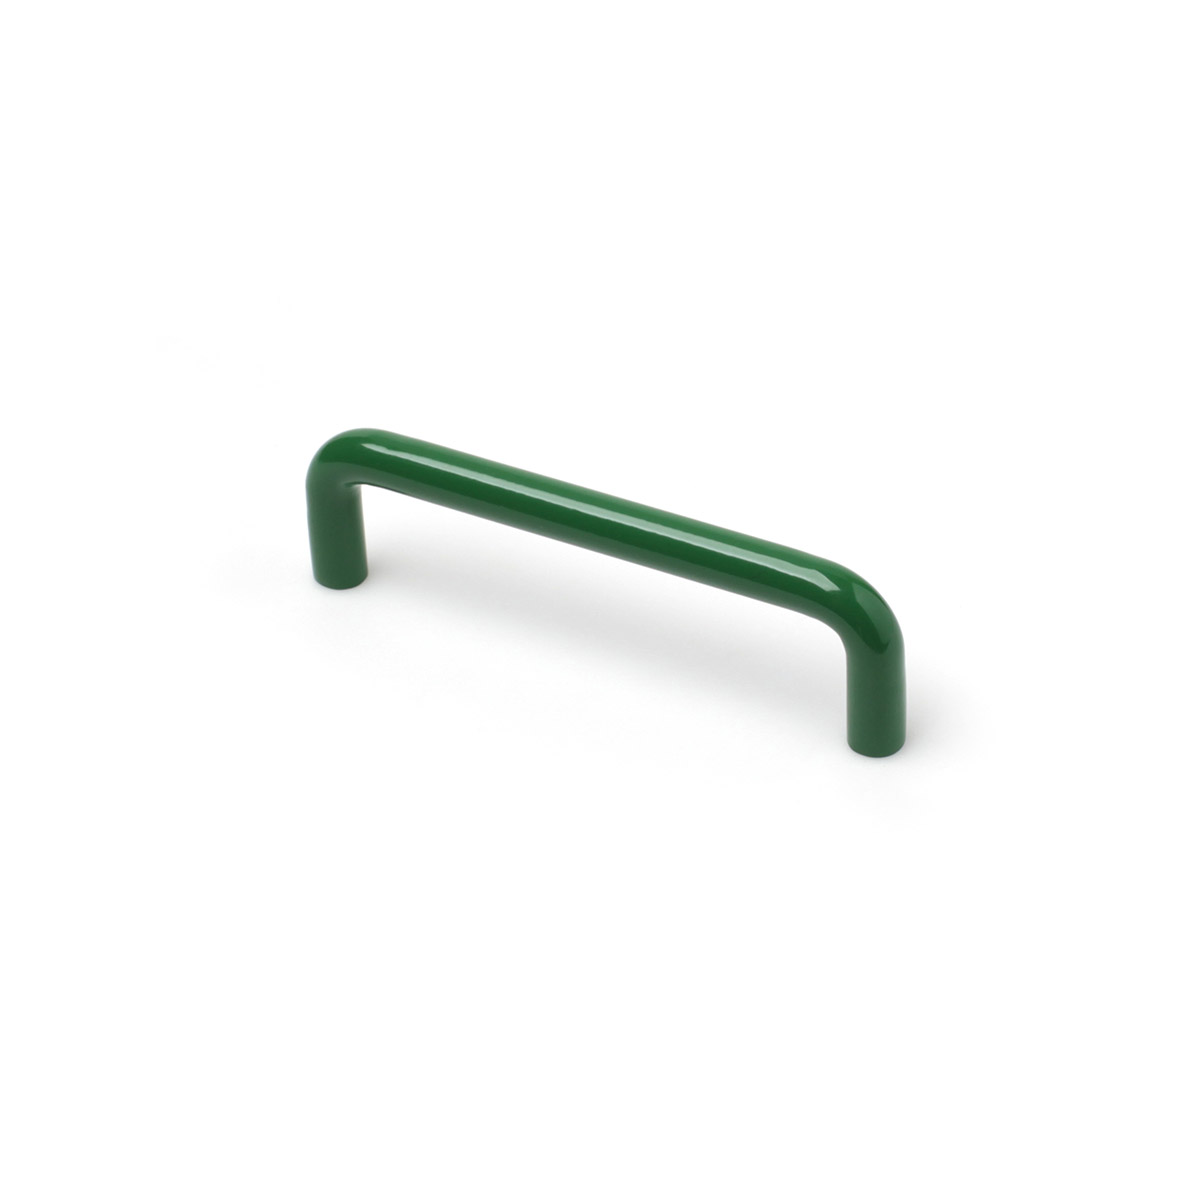 Asa de hierro con acabado verde, dimensiones:106x10x30mm y entrepuntos:96mm